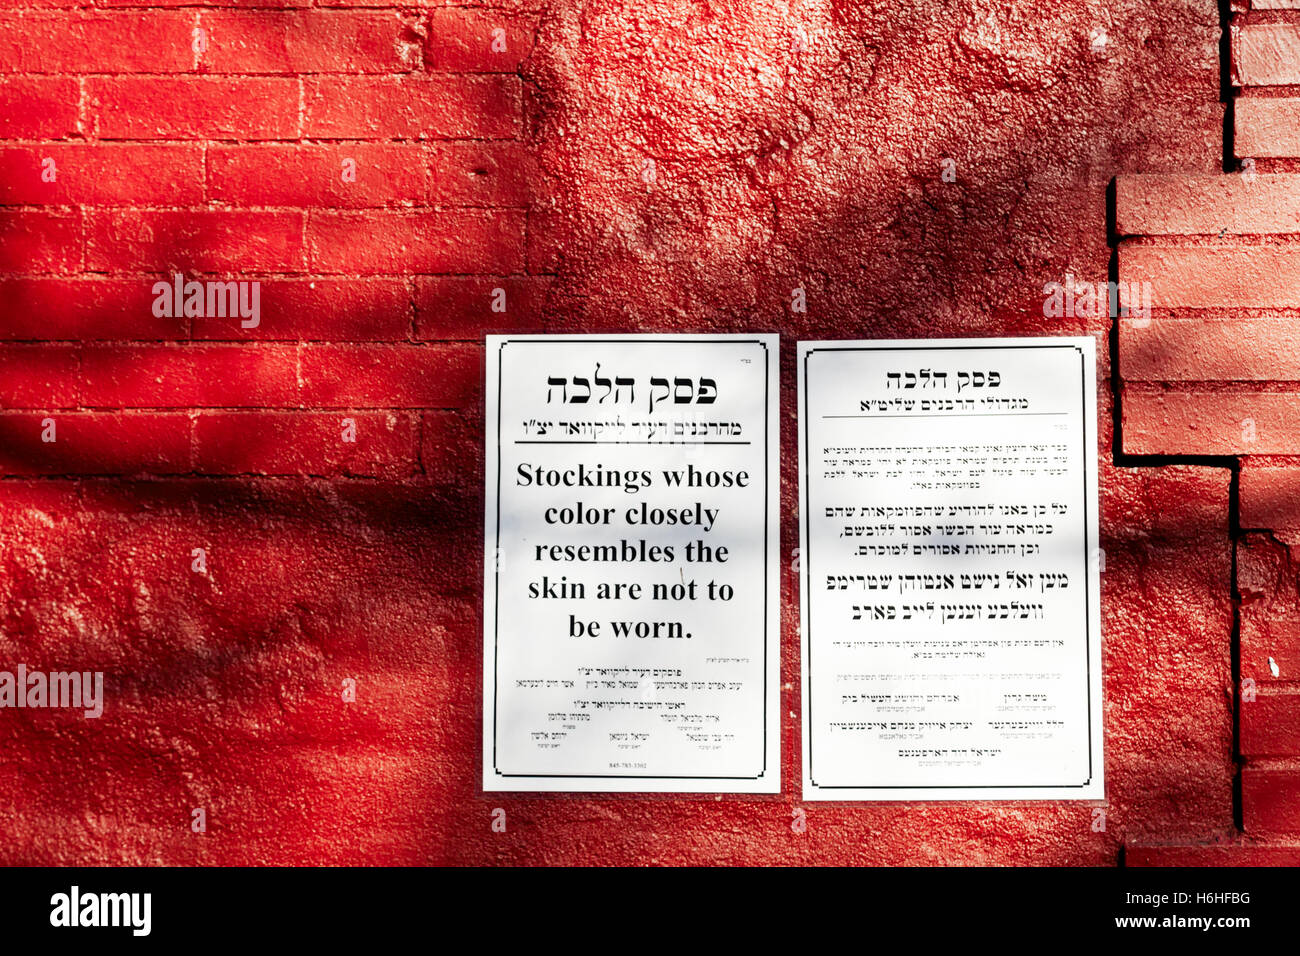 New-York - 14 NOV: Eine Benachrichtigung auf eine rote Wand informieren in Jiddisch und Englisch in Bezug auf eine jüdische Halacah Gesetz in New York, USA Stockfoto